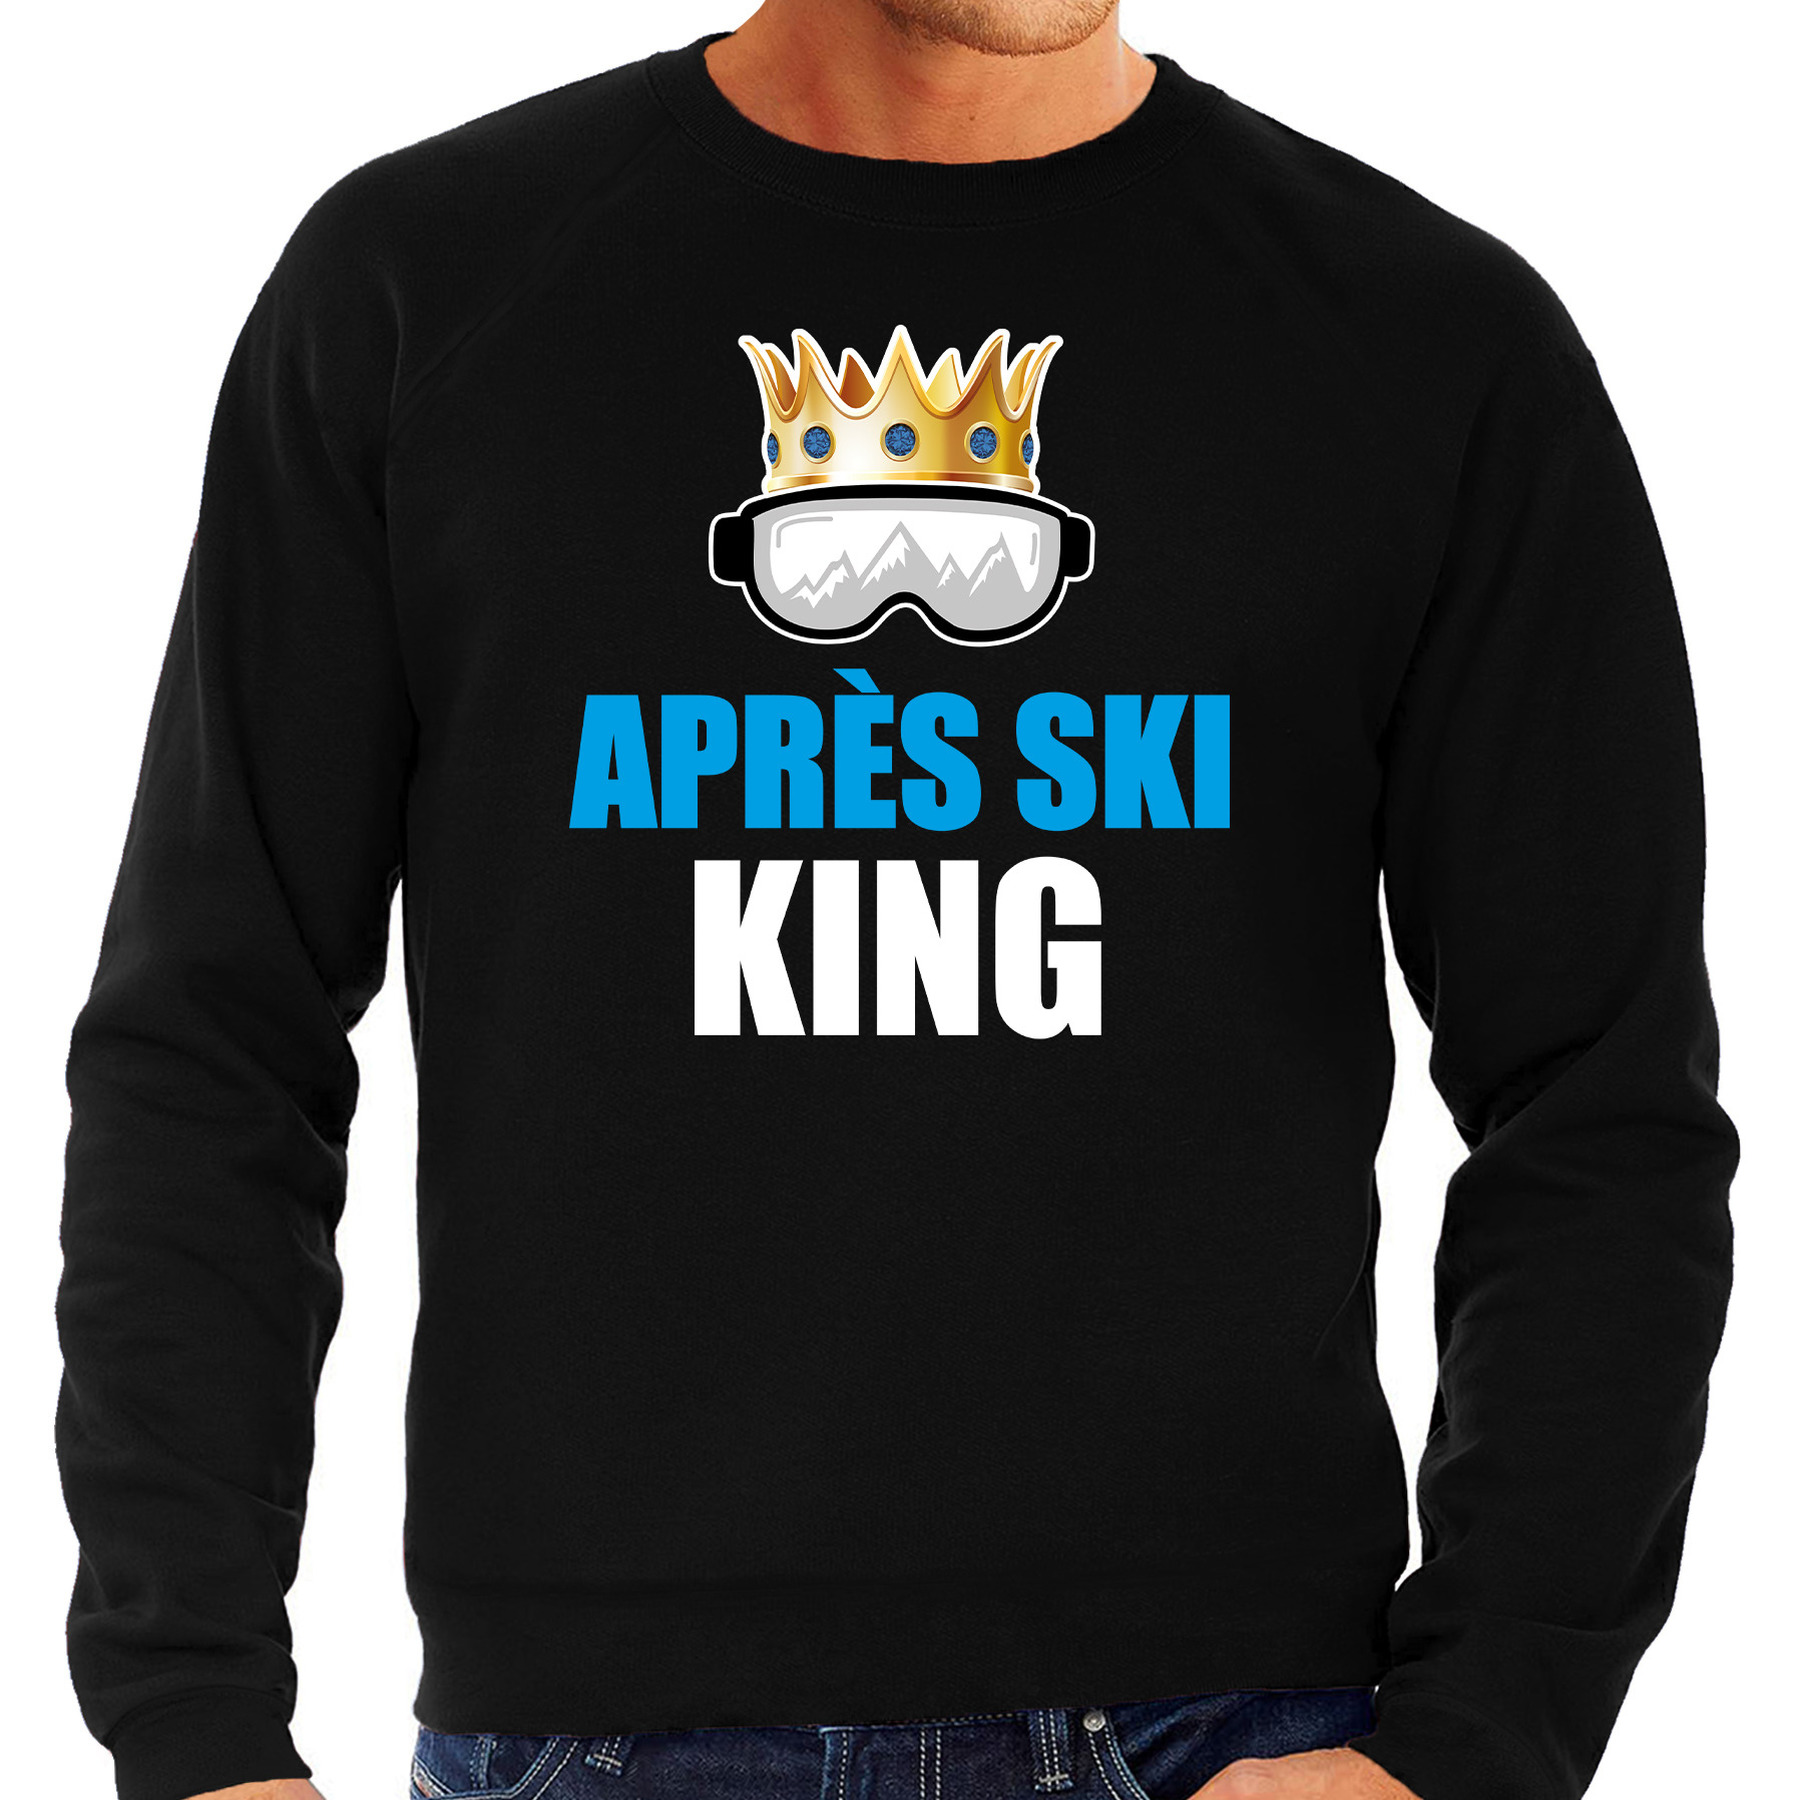 Apres ski trui Apres ski King zwart heren Wintersport sweater Foute apres ski outfit